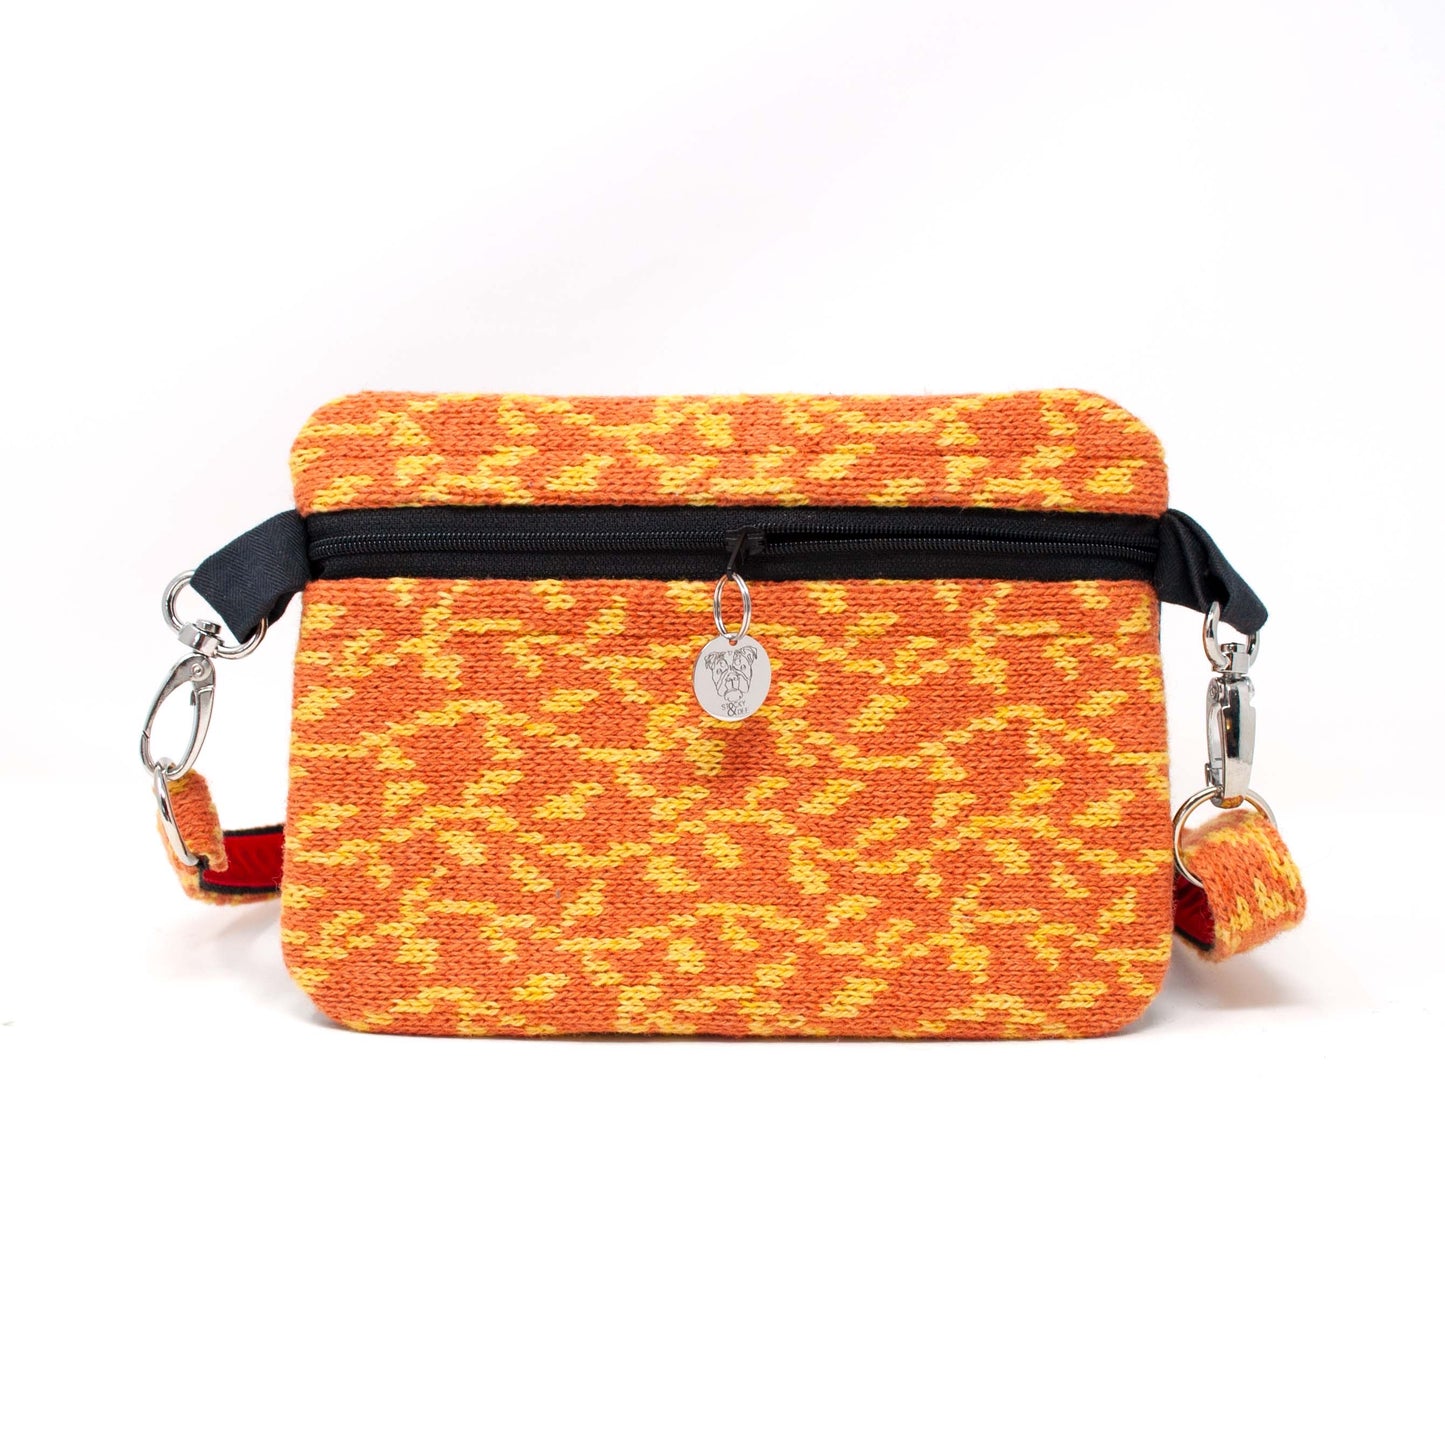 Orange & Yellow - Vine Design - Luxury Bum Bag